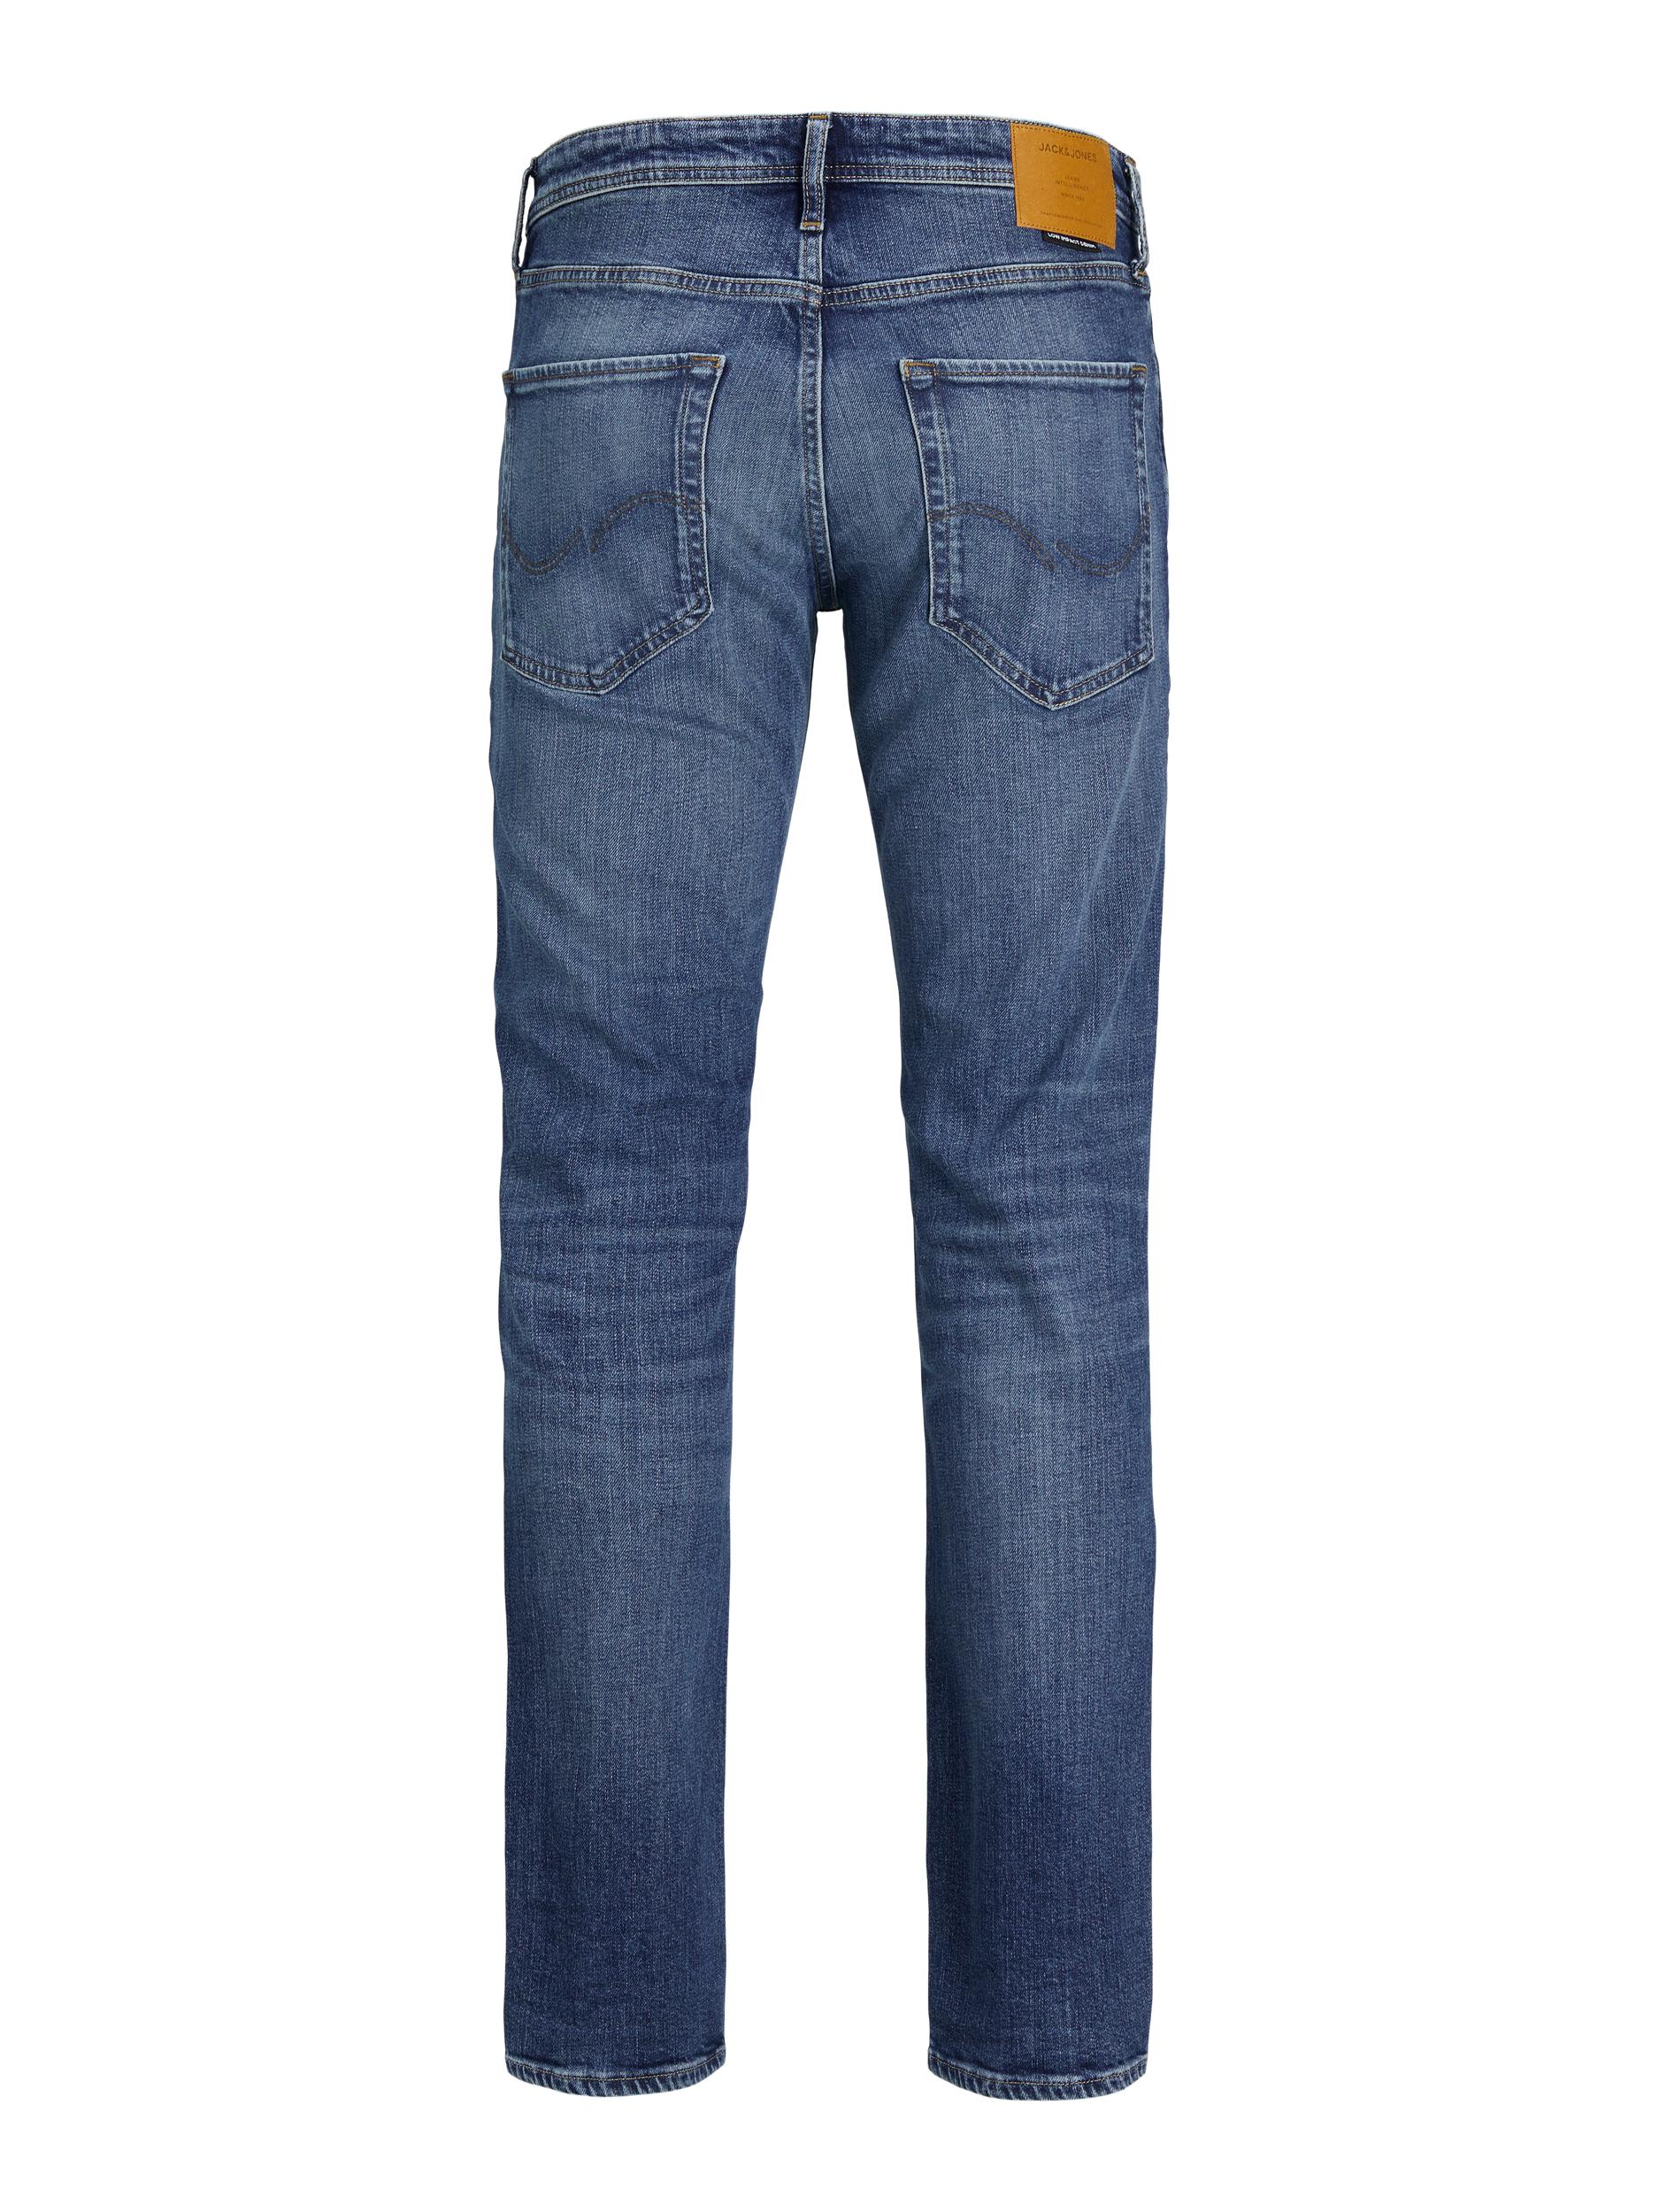 Clark Jeans, Blue Denim, W32/L30